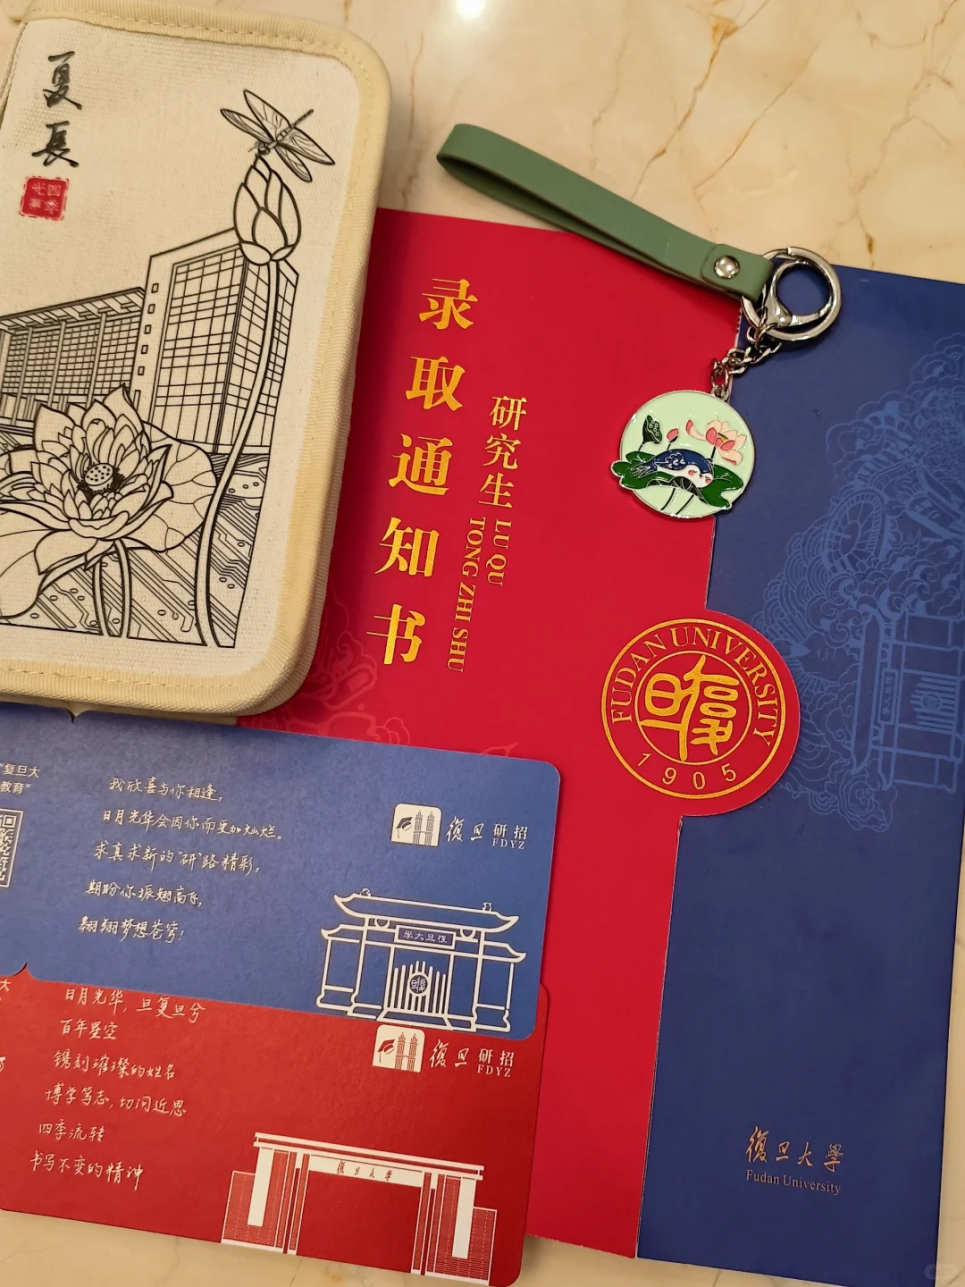 中国政法大学北京大学各大院校集中邮寄的时间预计在5月下旬~6月左右